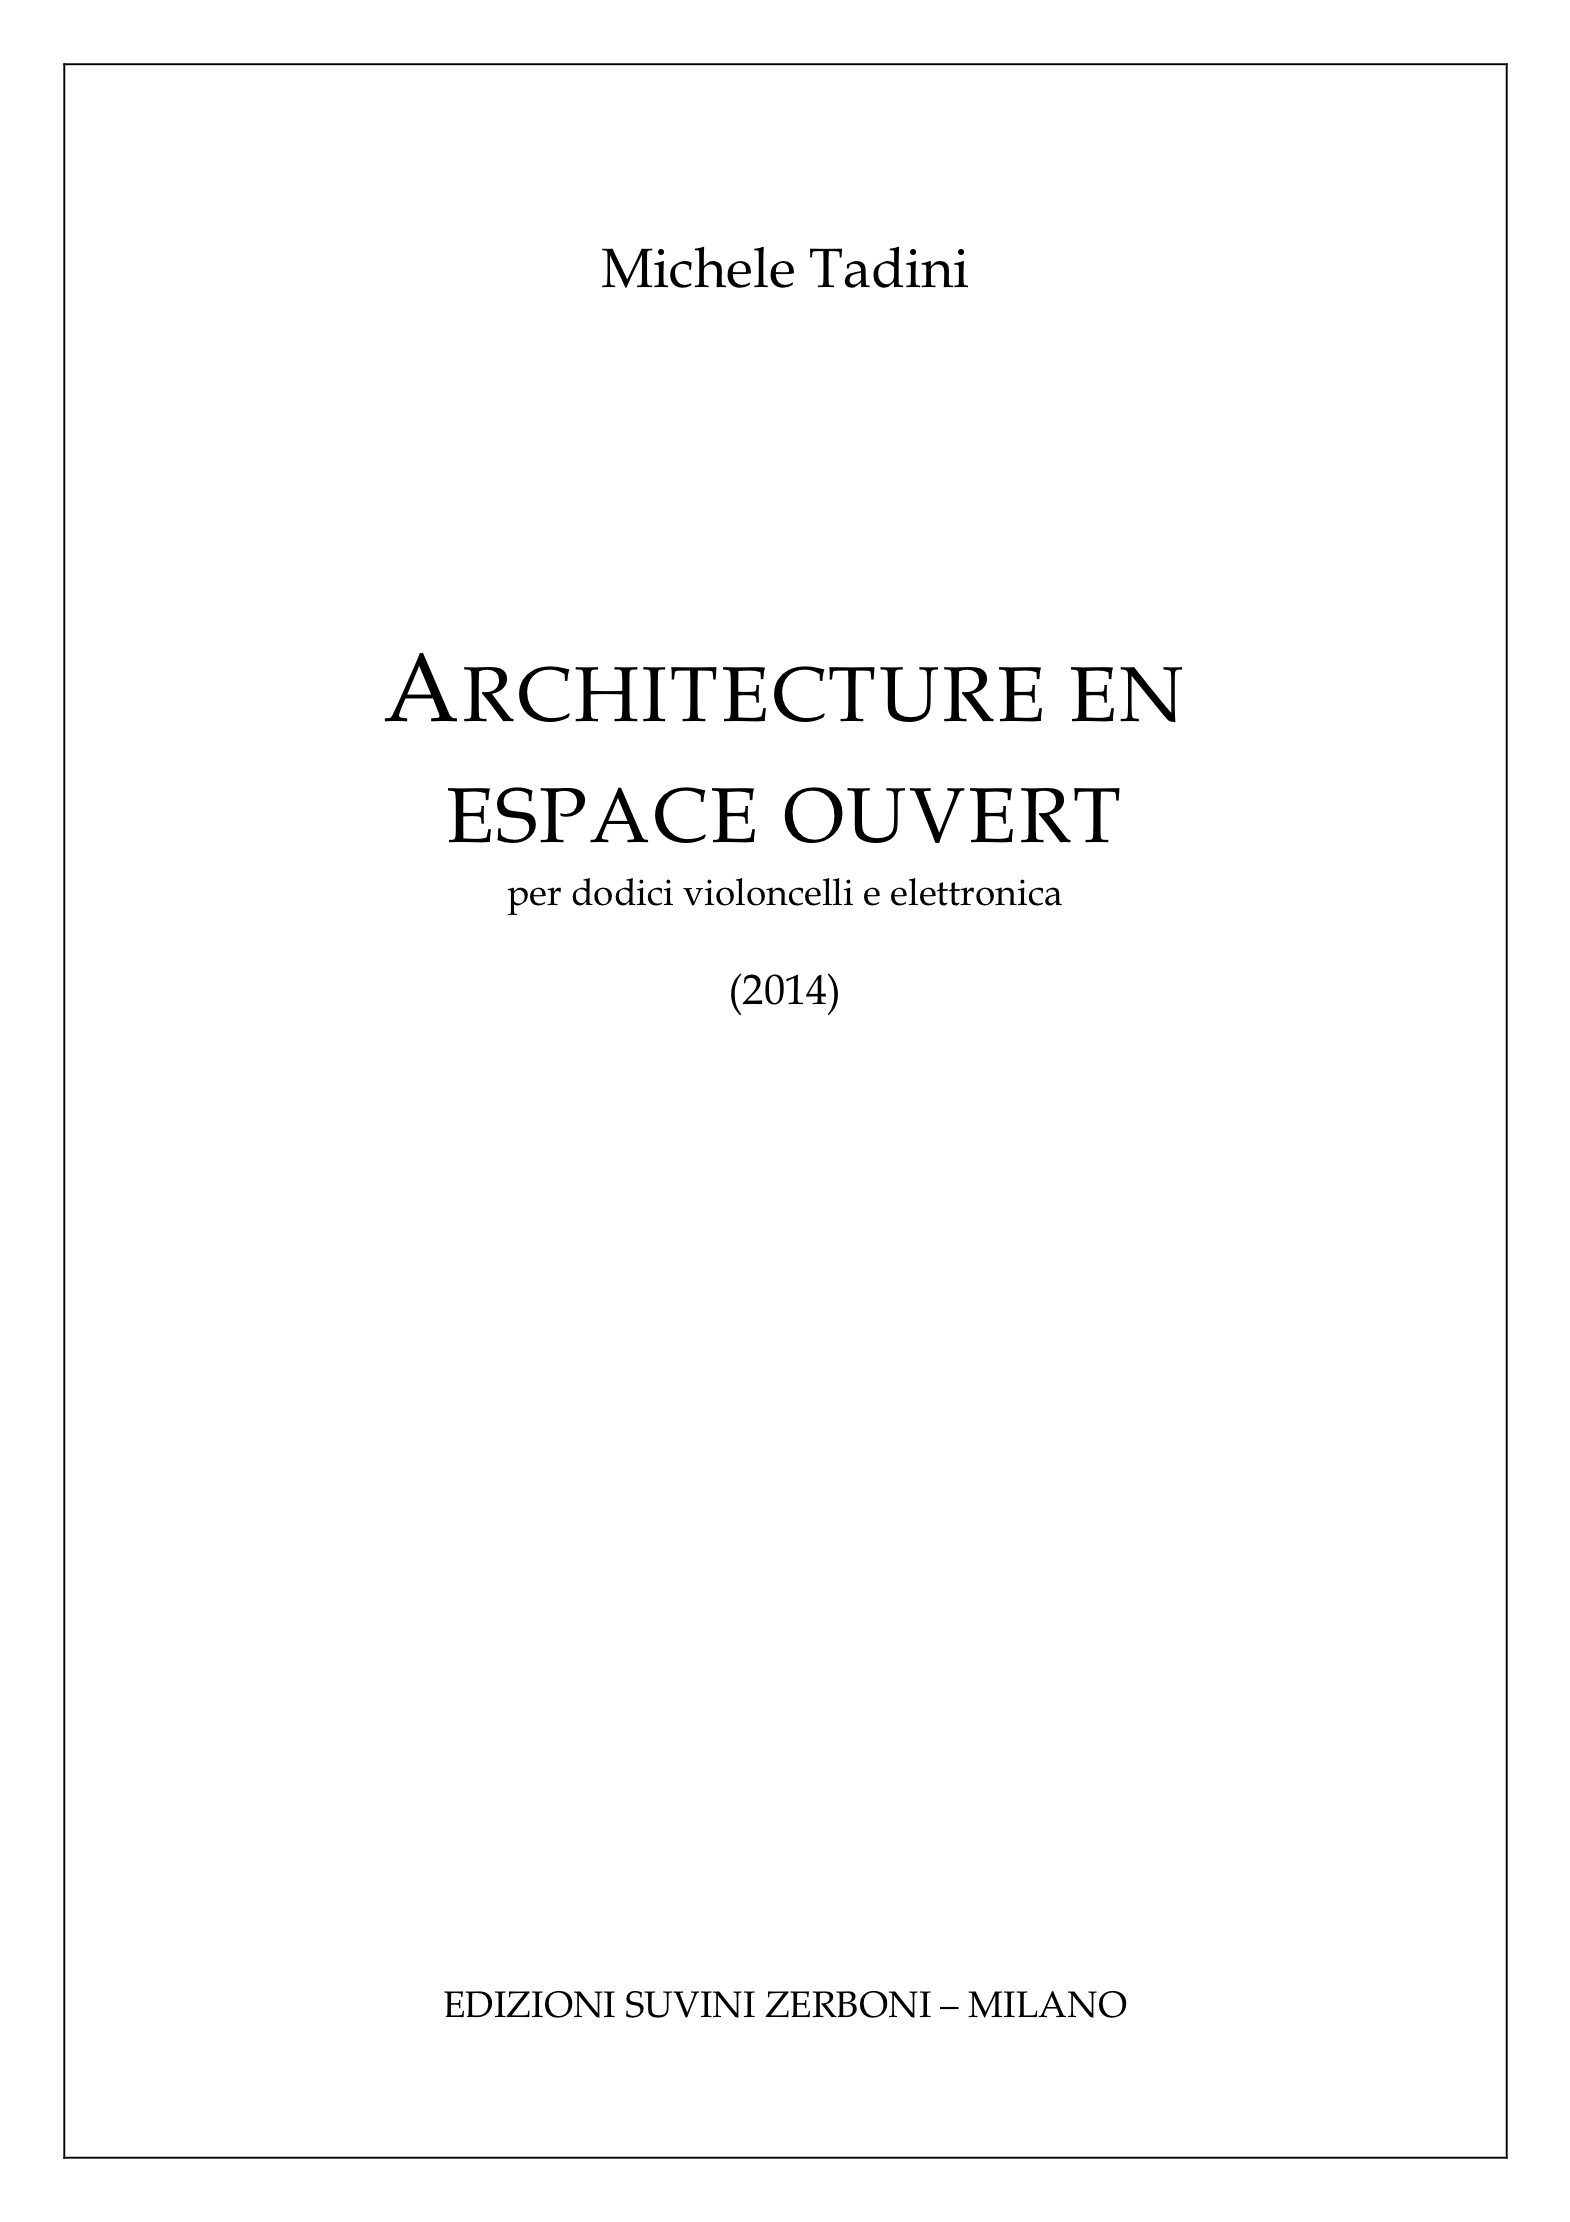 Architecture en espace ouvert_Tadini 1